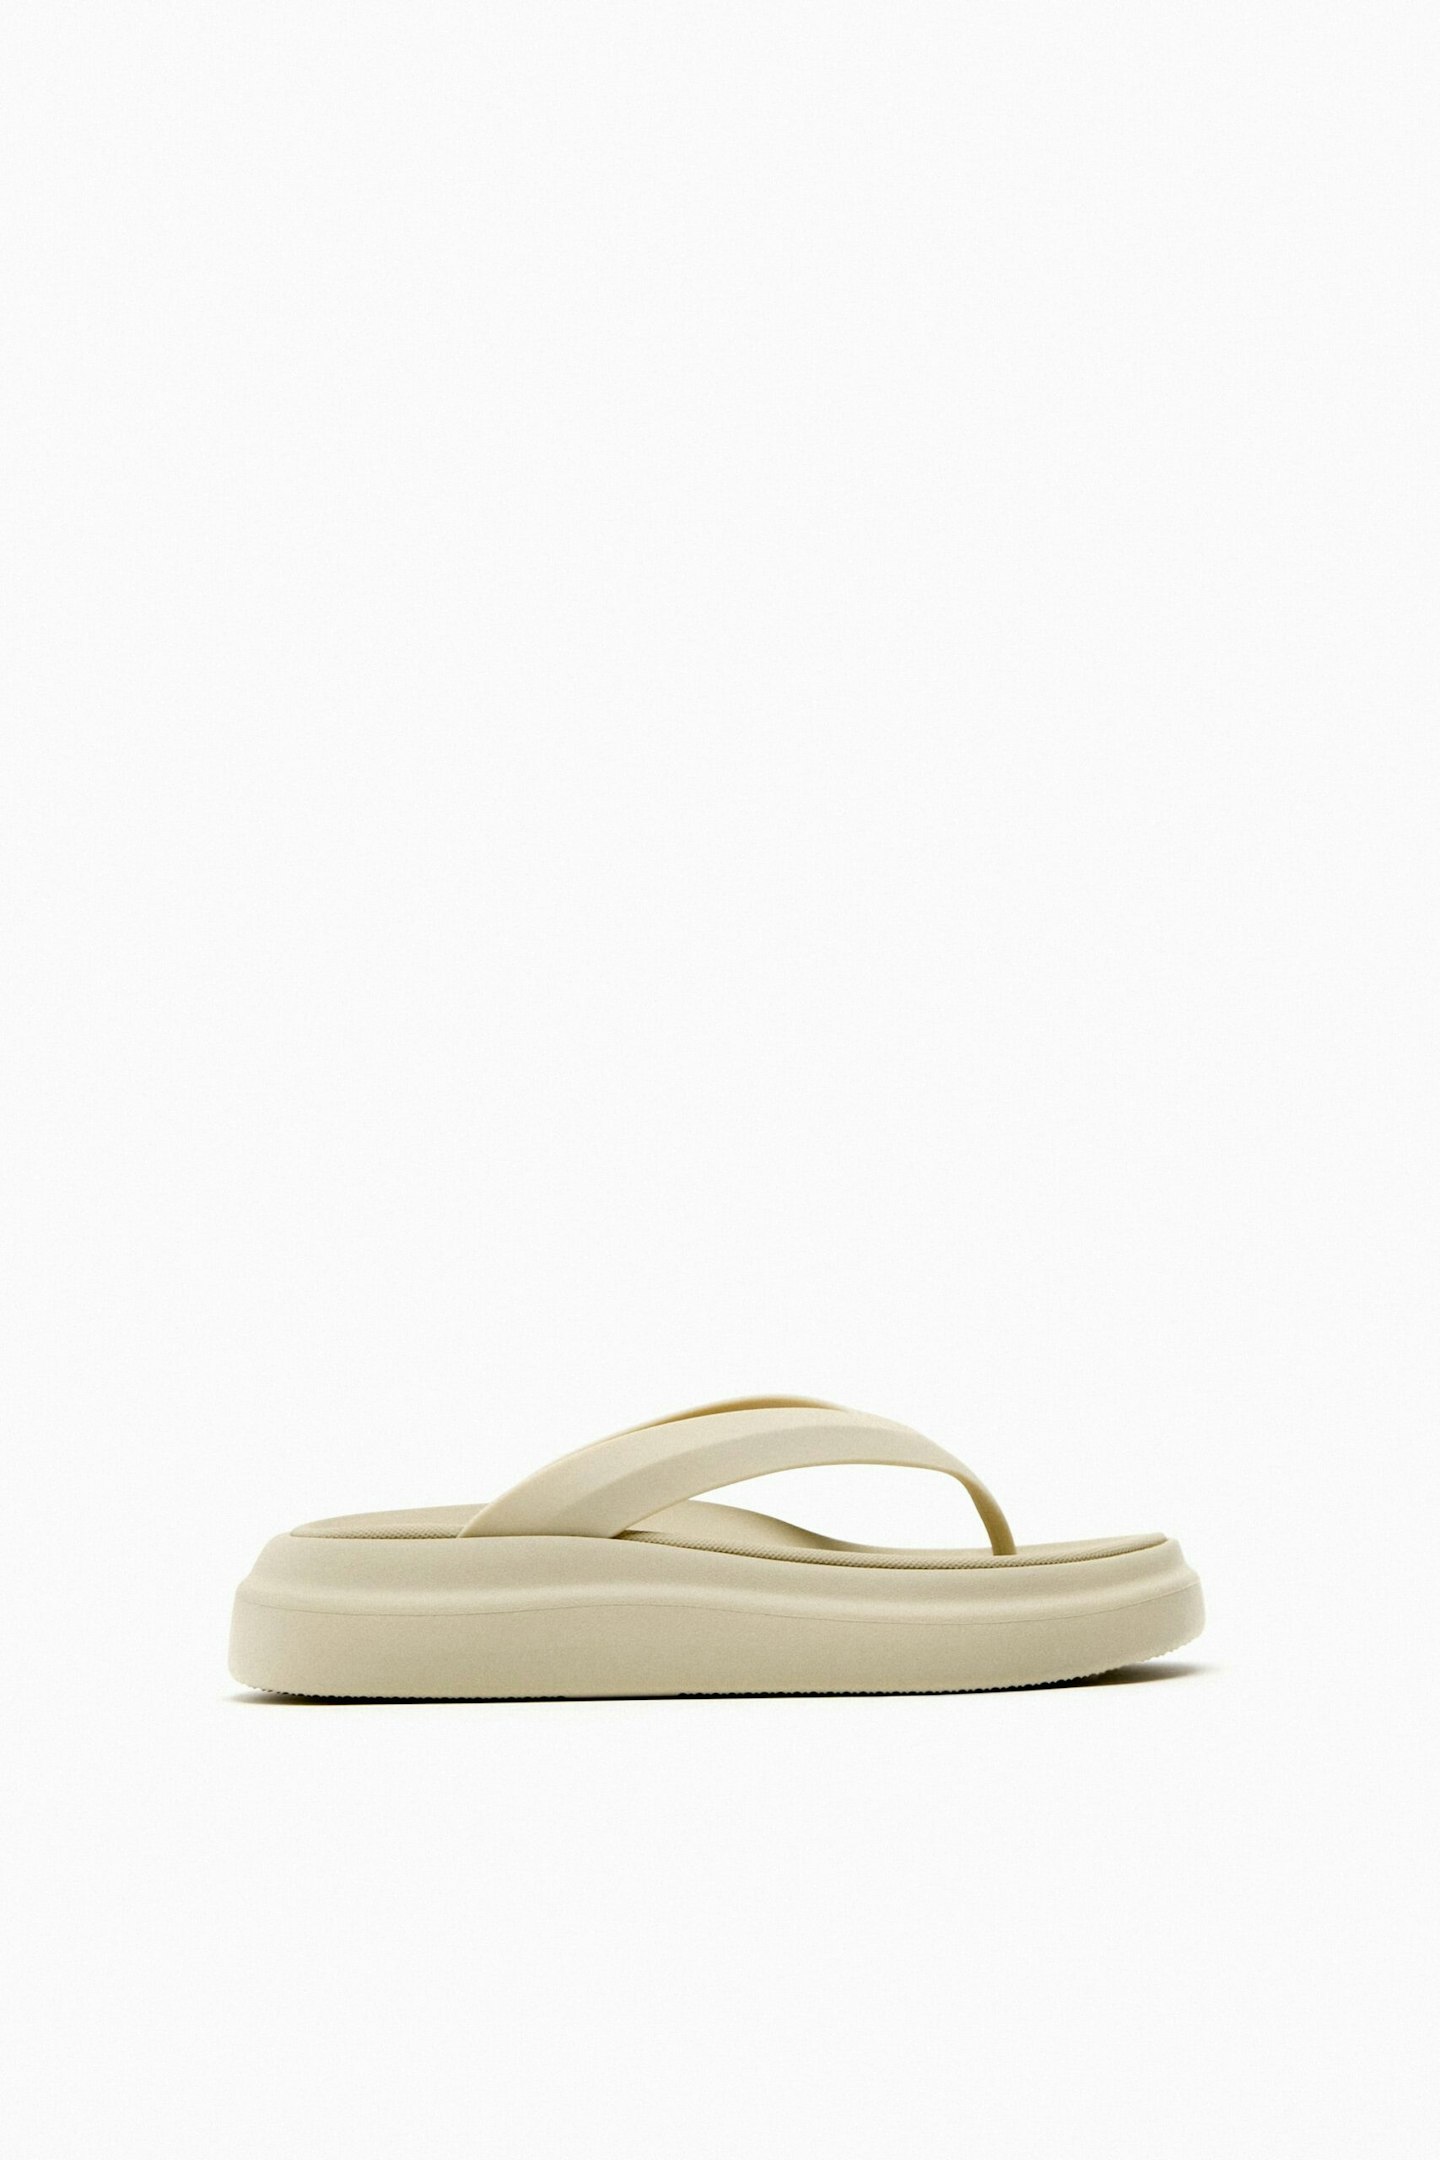 Zara, Flatform Sandals